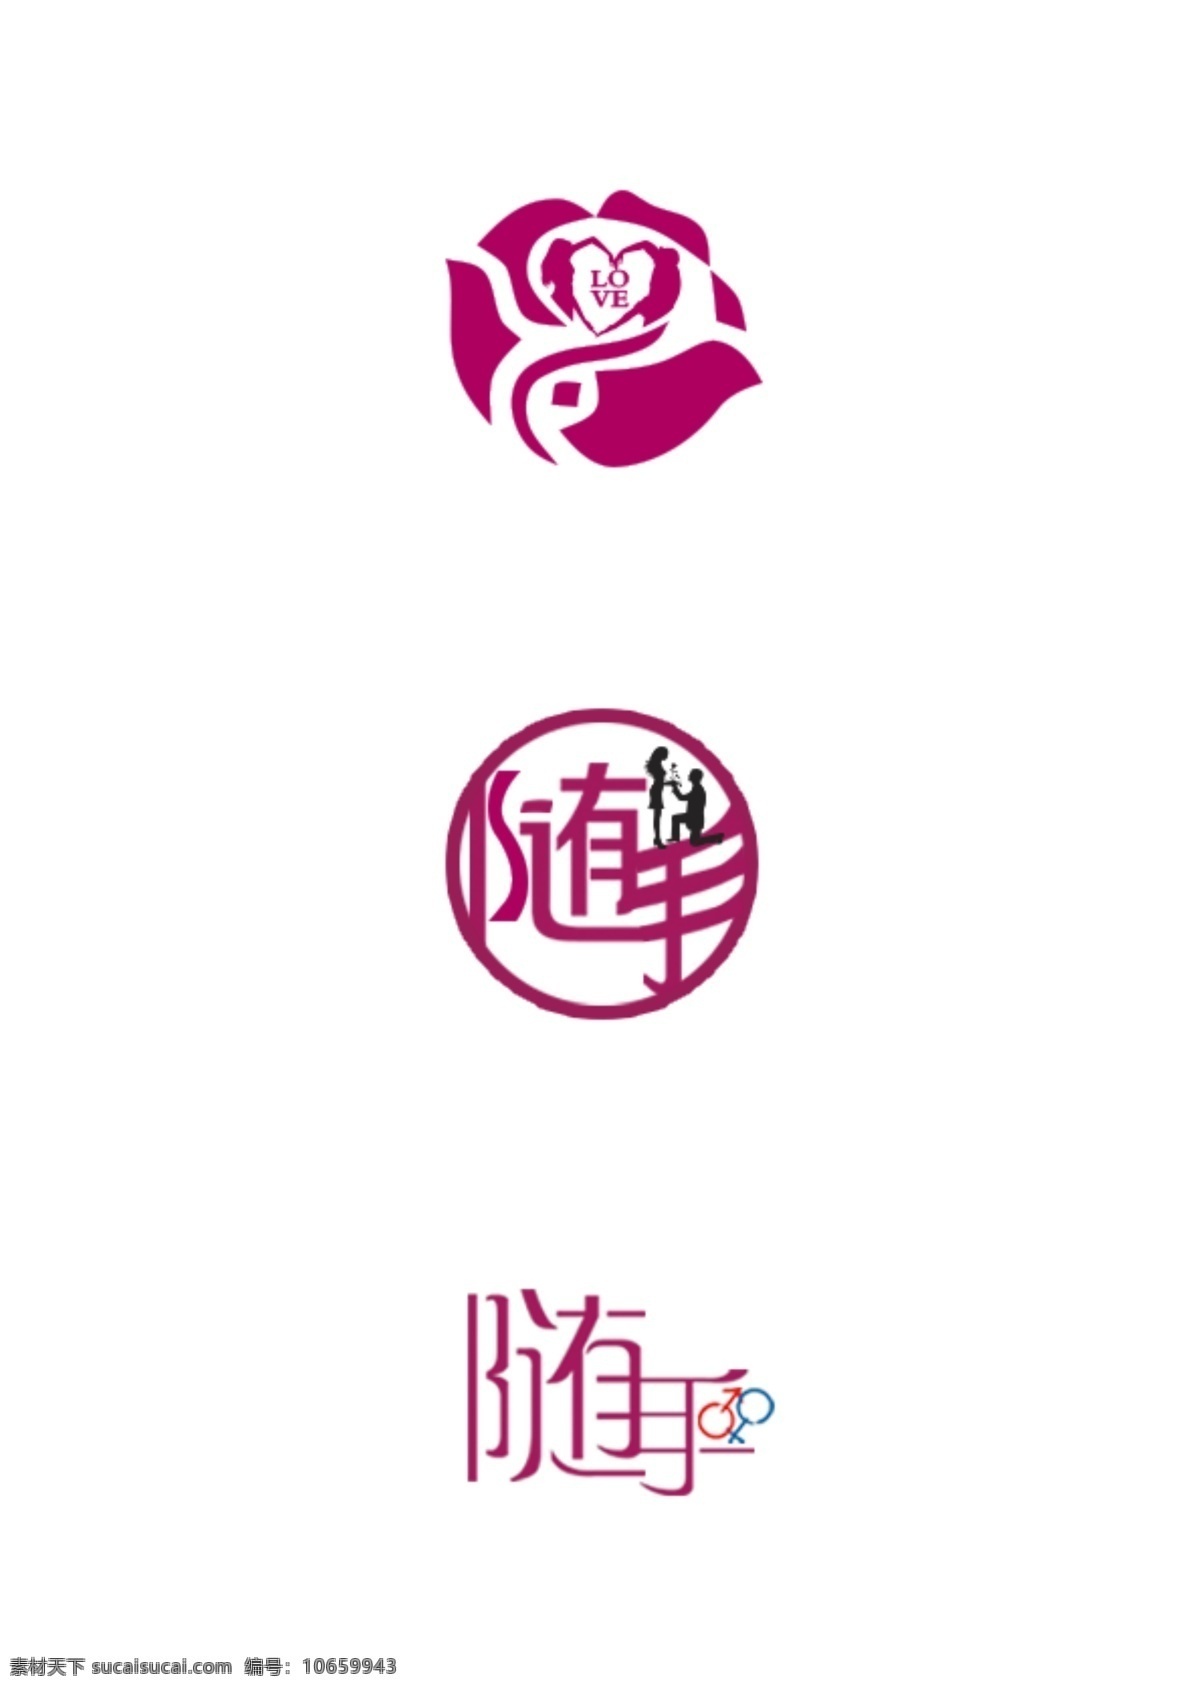 单身 男女 logo 玫瑰花标志 单身男女标志 单身logo 随手字体变形 随手标志 ui设计 图标设计